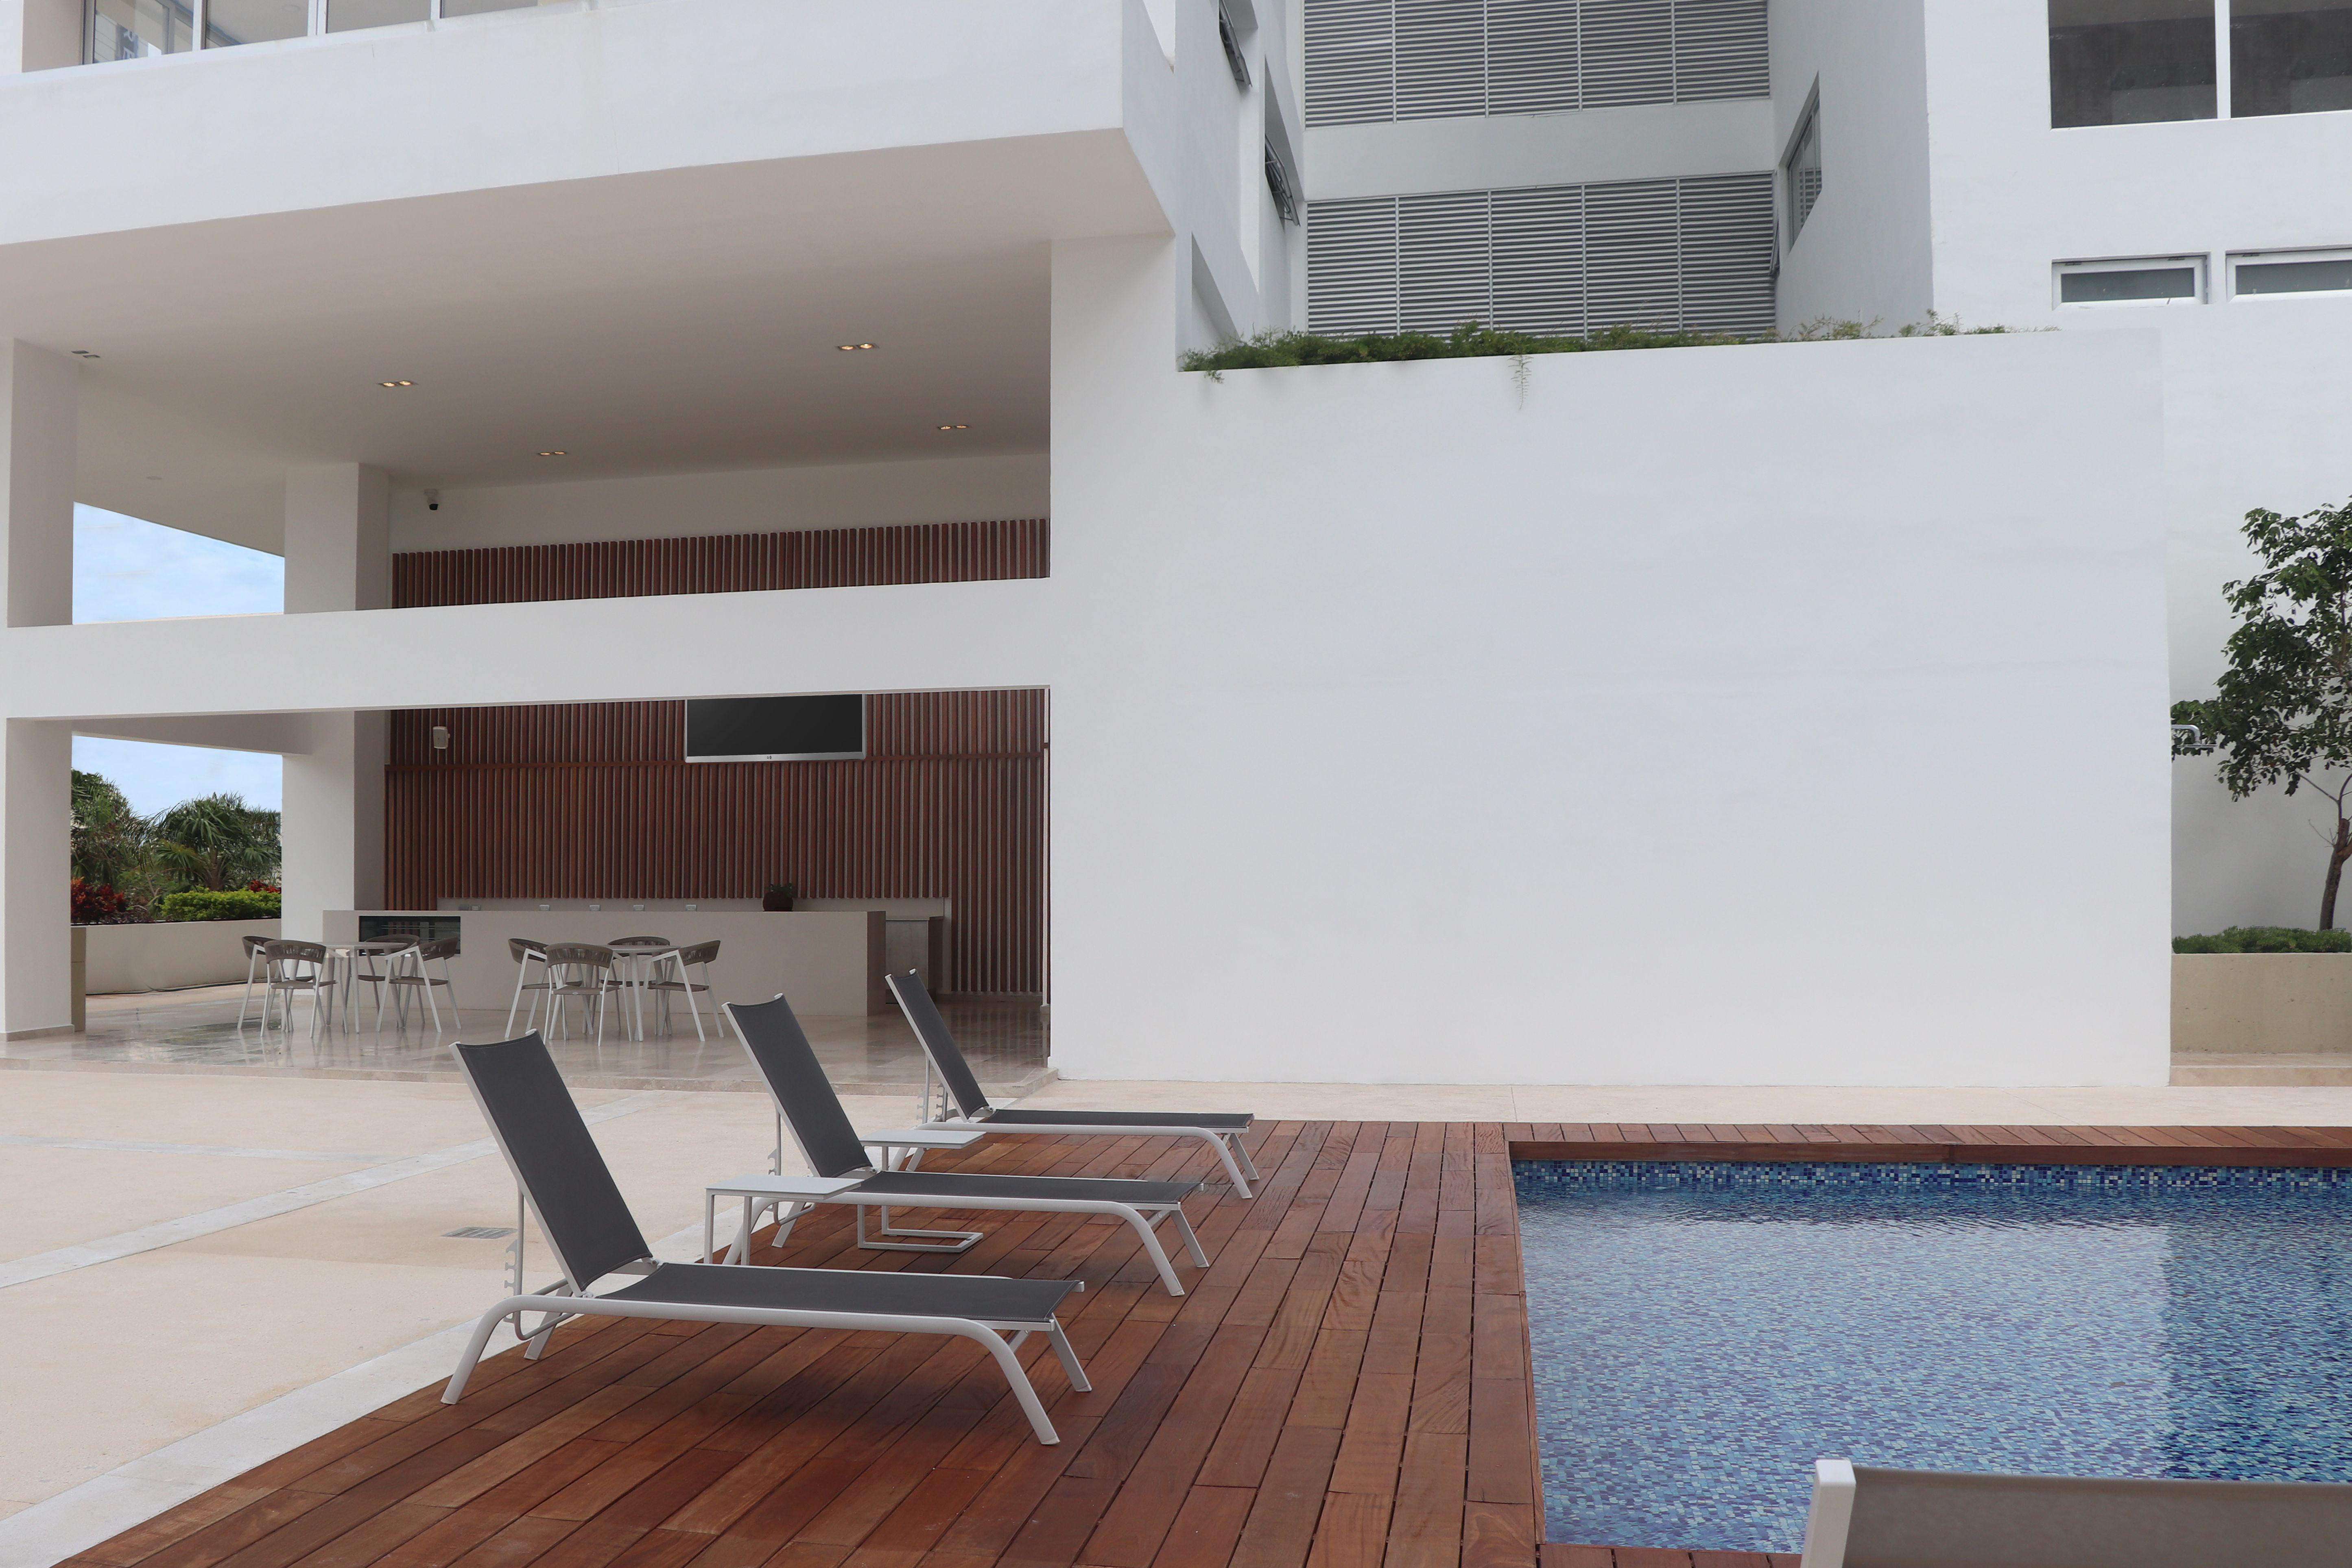 Brezza Towers Cancún | Departamentos Preventa, Venta y Renta